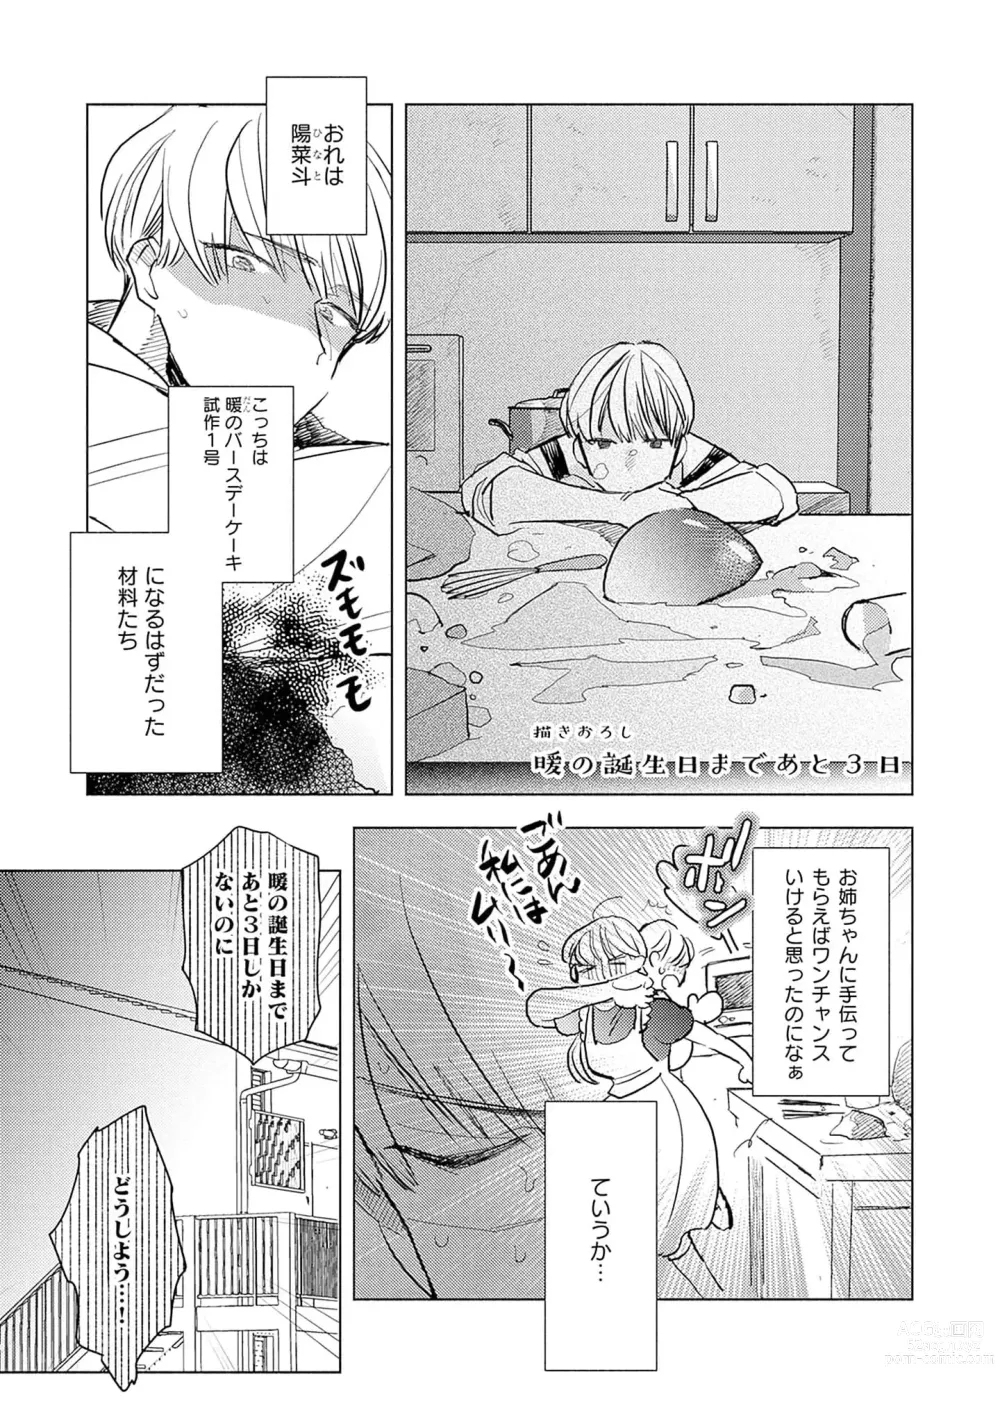 Page 165 of manga Strawberry na Days 2